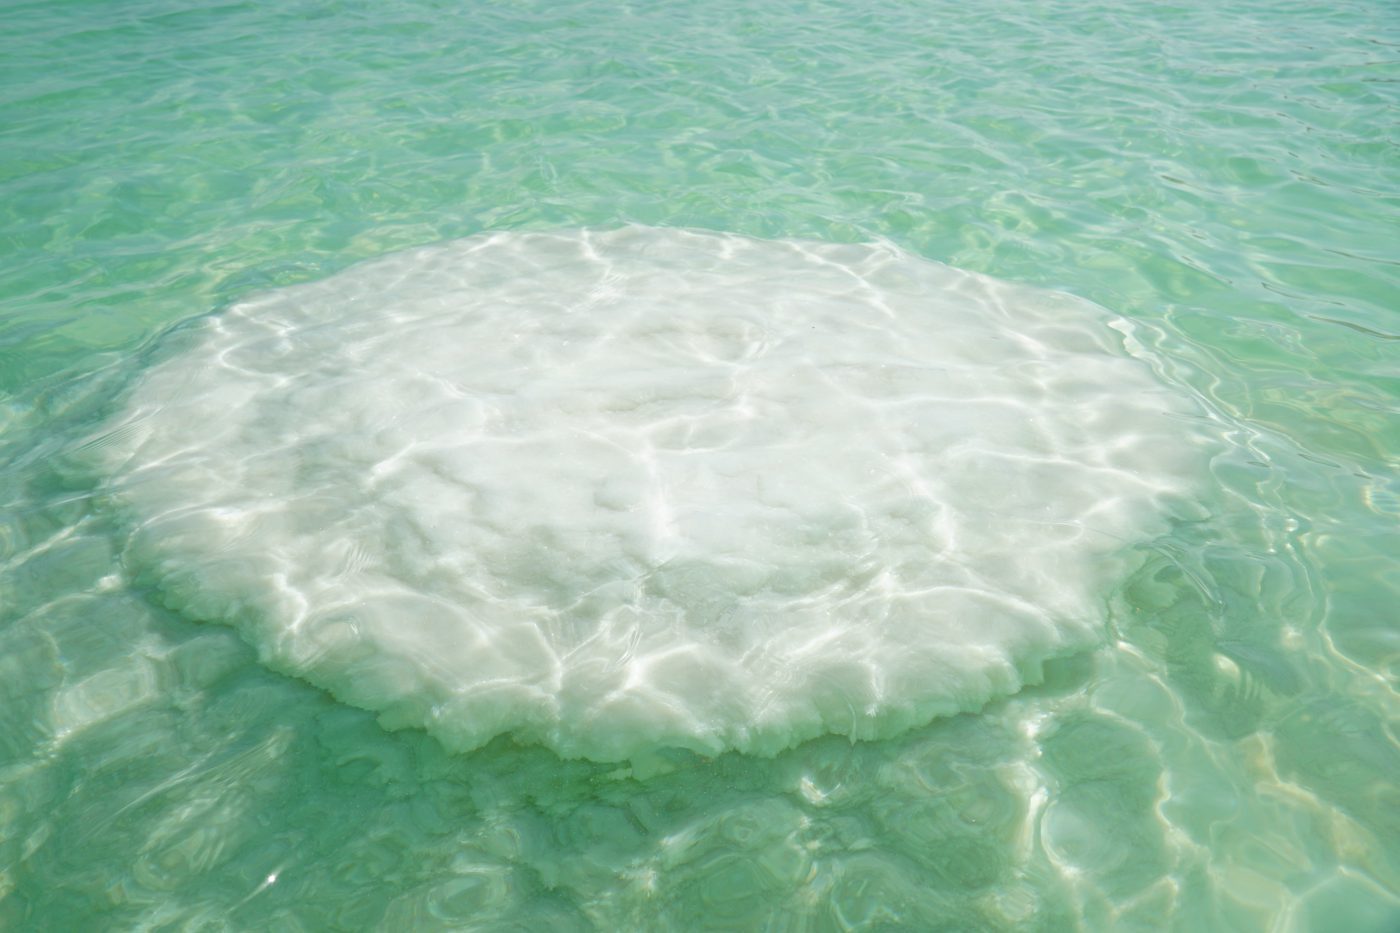 פטריות ים המלח – משטחים לבנים על מים בצבע טורקיז